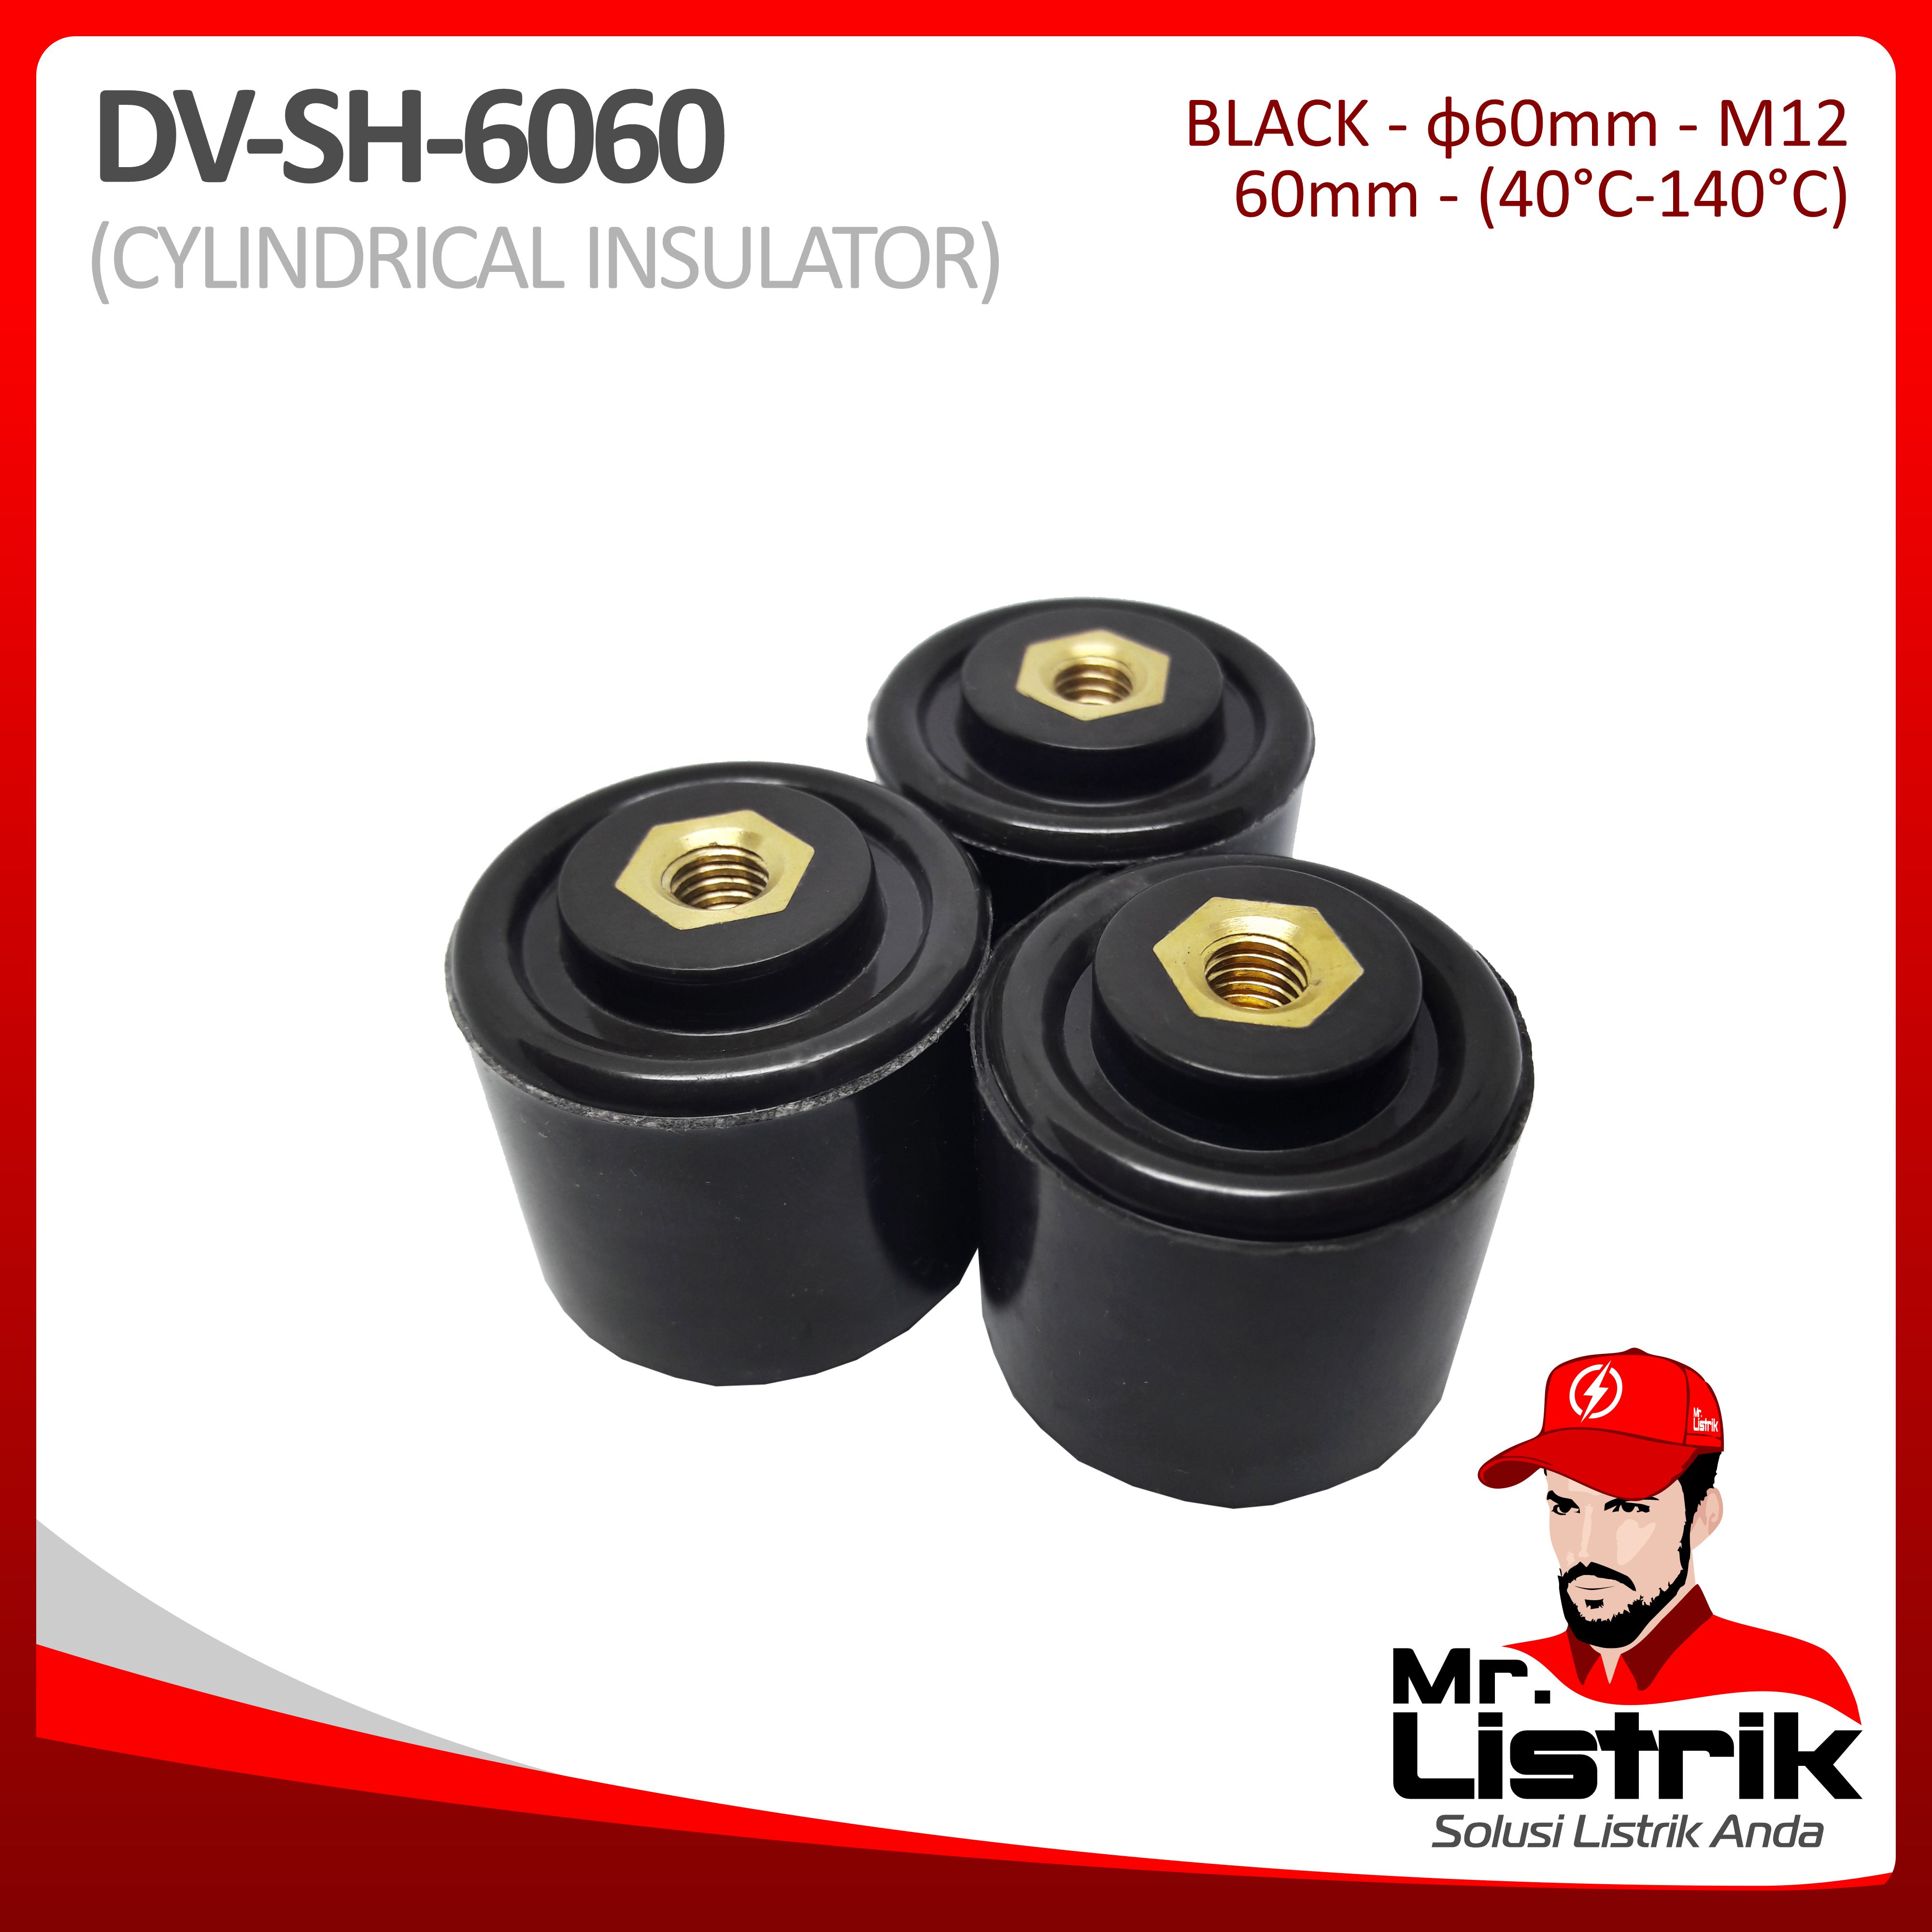 Cylindrical Insulator Rekolit DV SH-6060